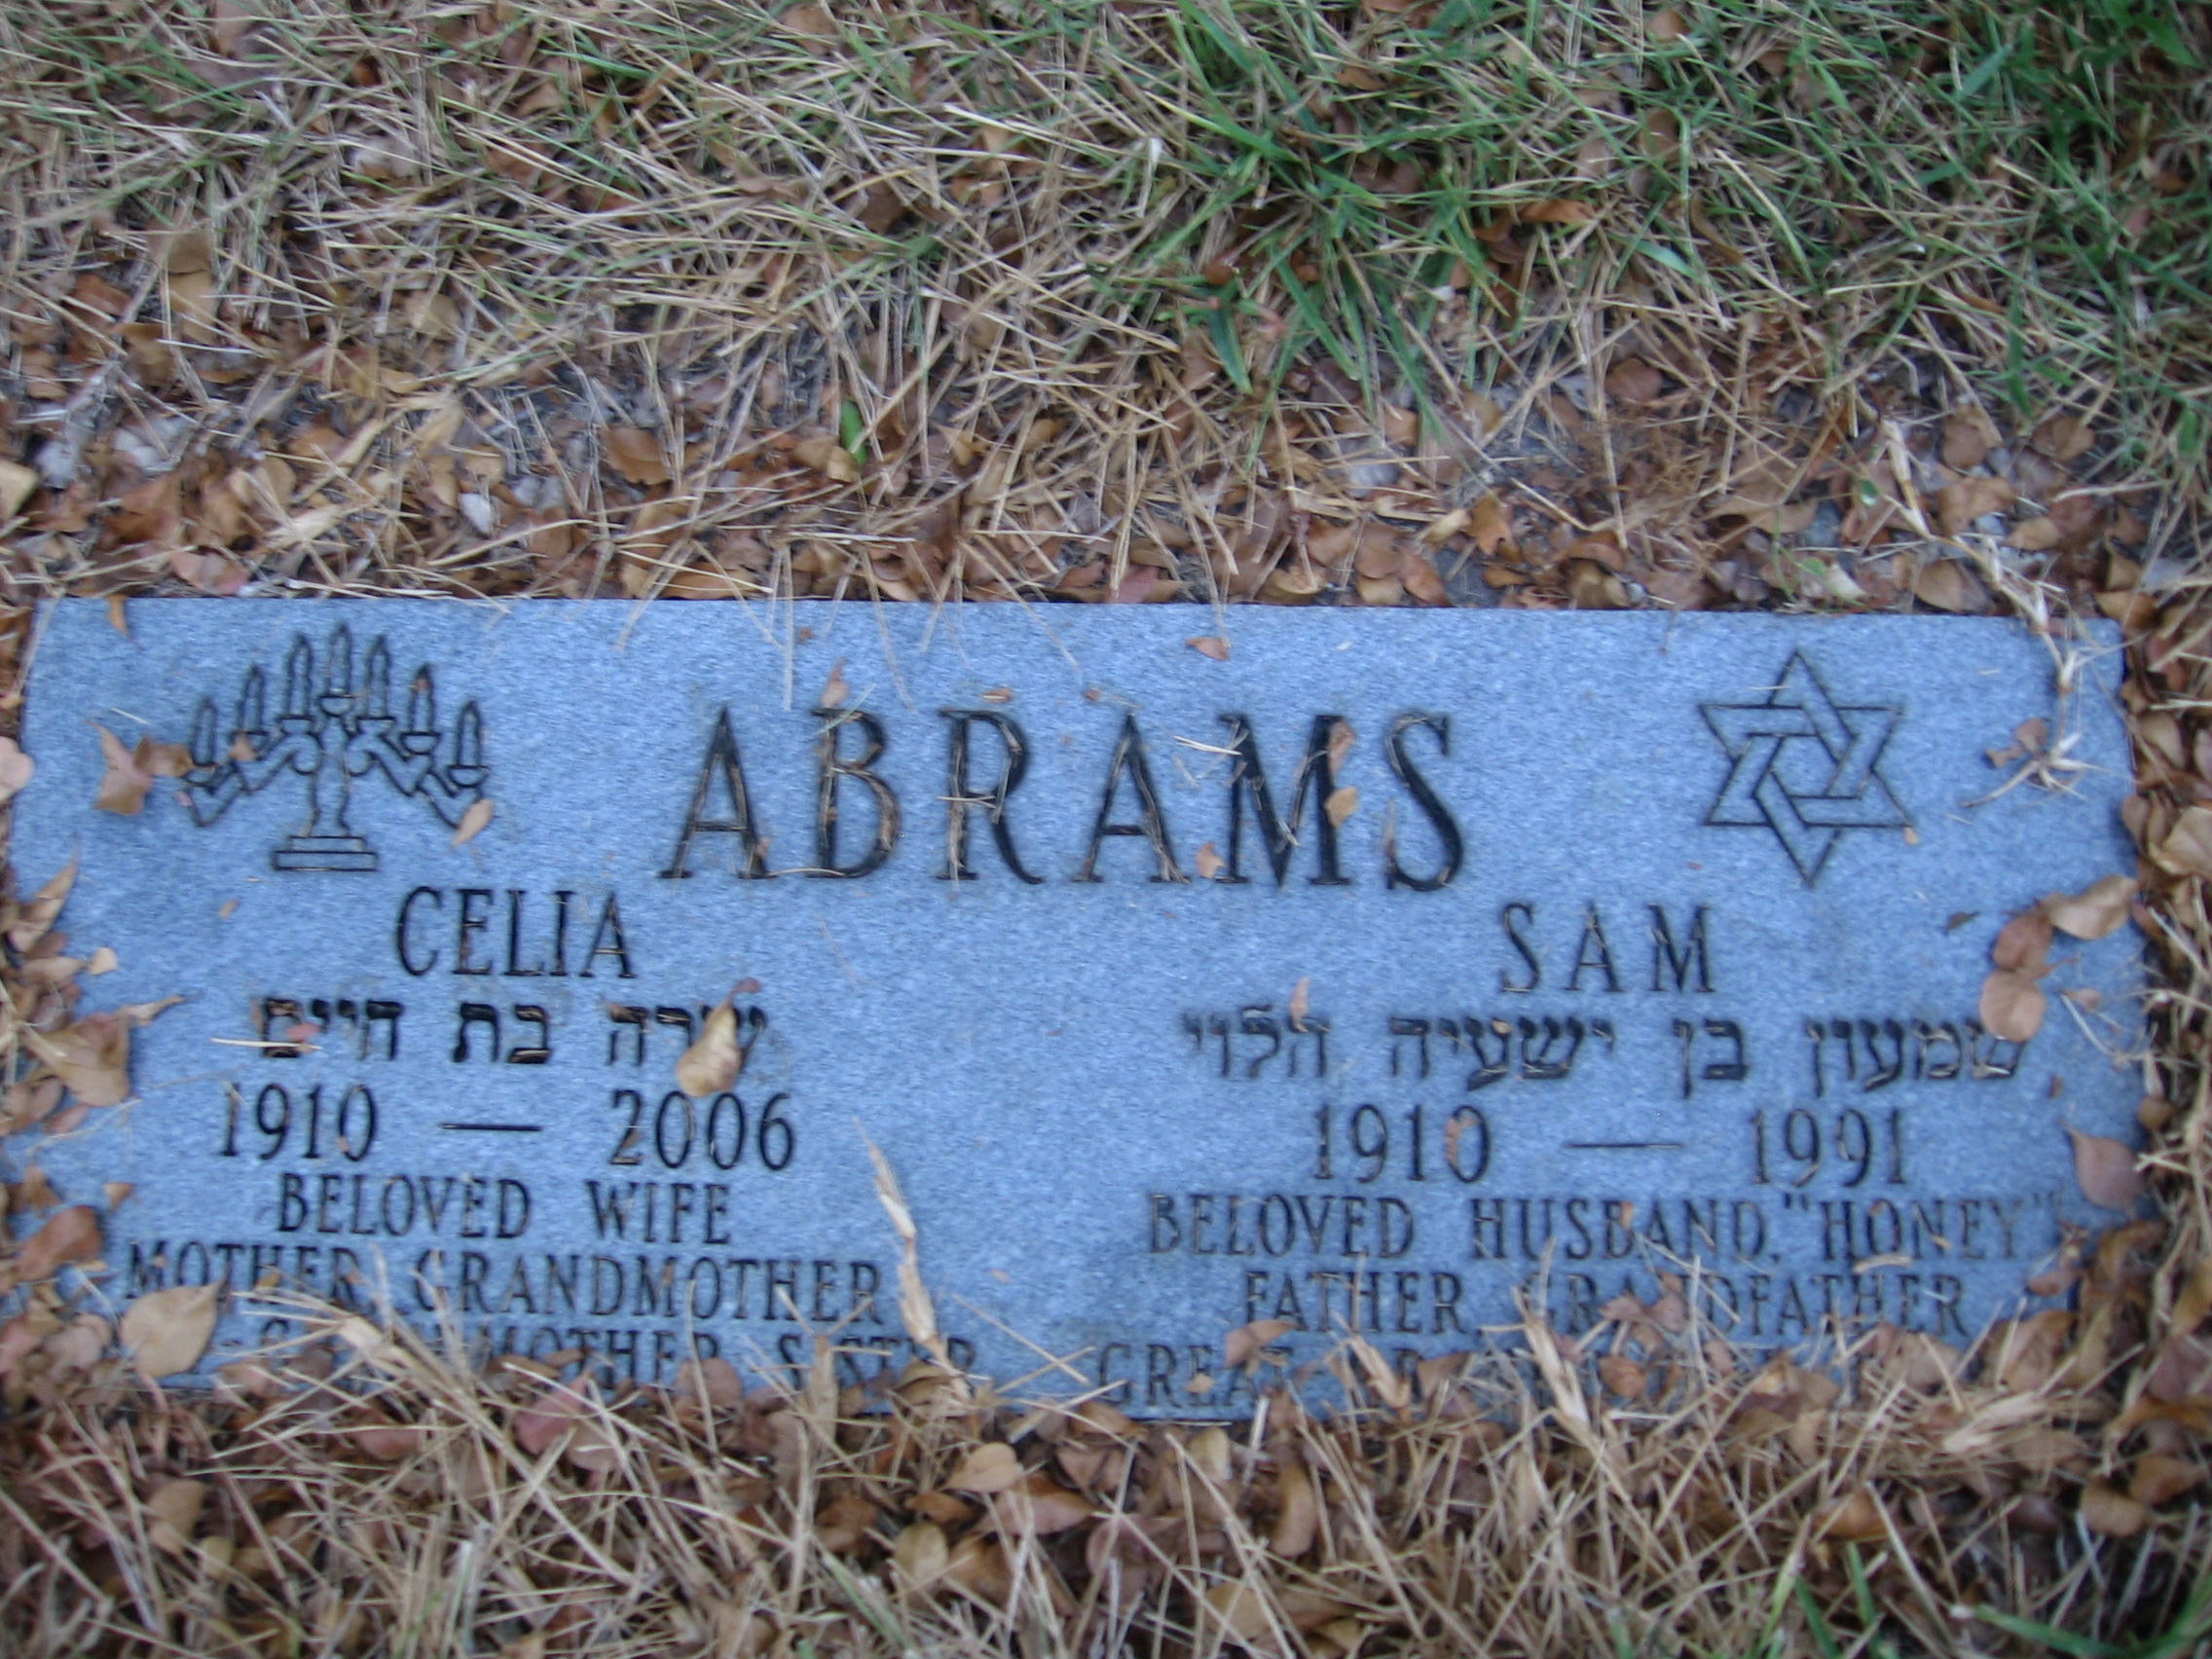 Sam Abrams